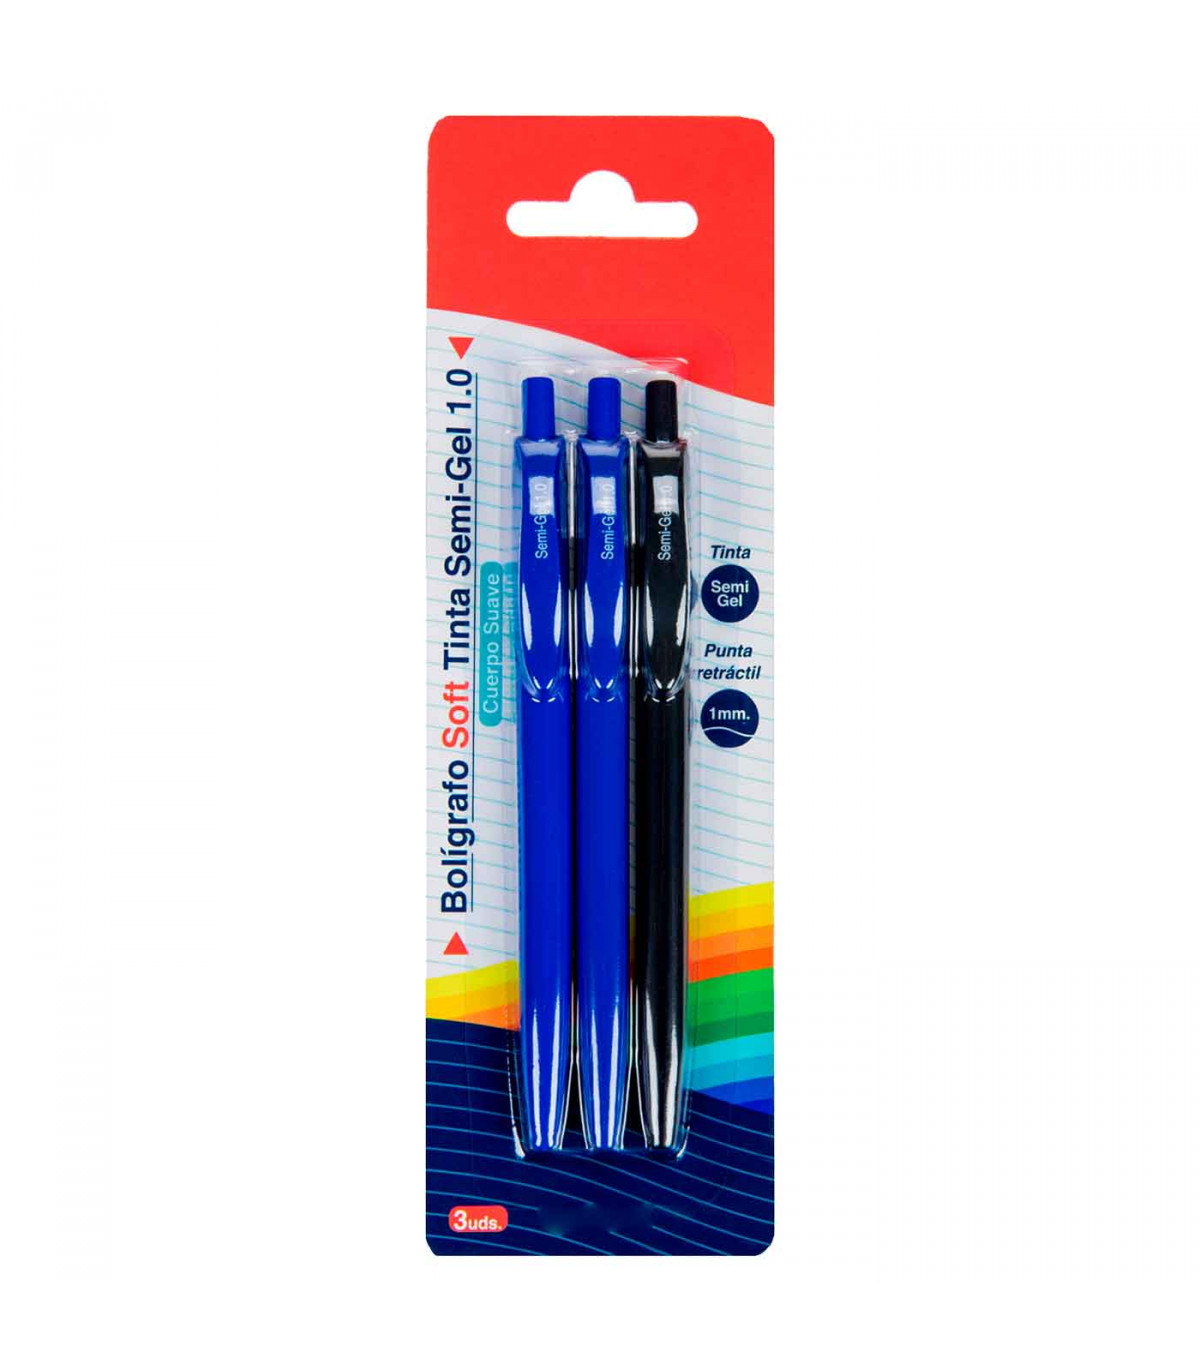 Tradineur - Set de 3 bolígrafos retráctiles - Fabricado en